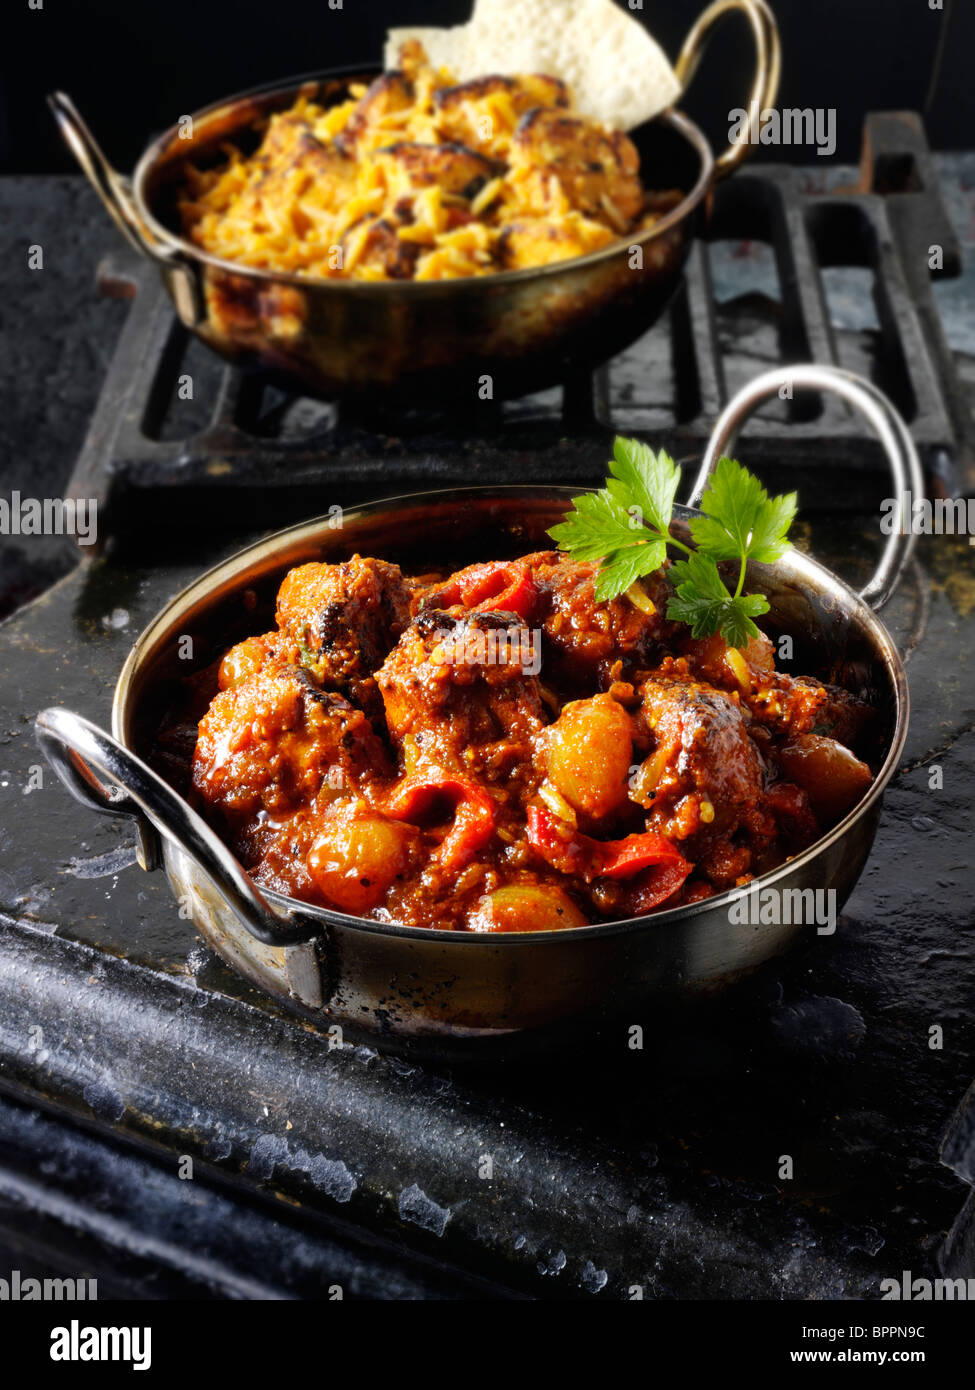 Piri Piri Hähnchen Curry & Reis, indisches Essen Rezept Bilder, Fotos & Bilder Stockfoto